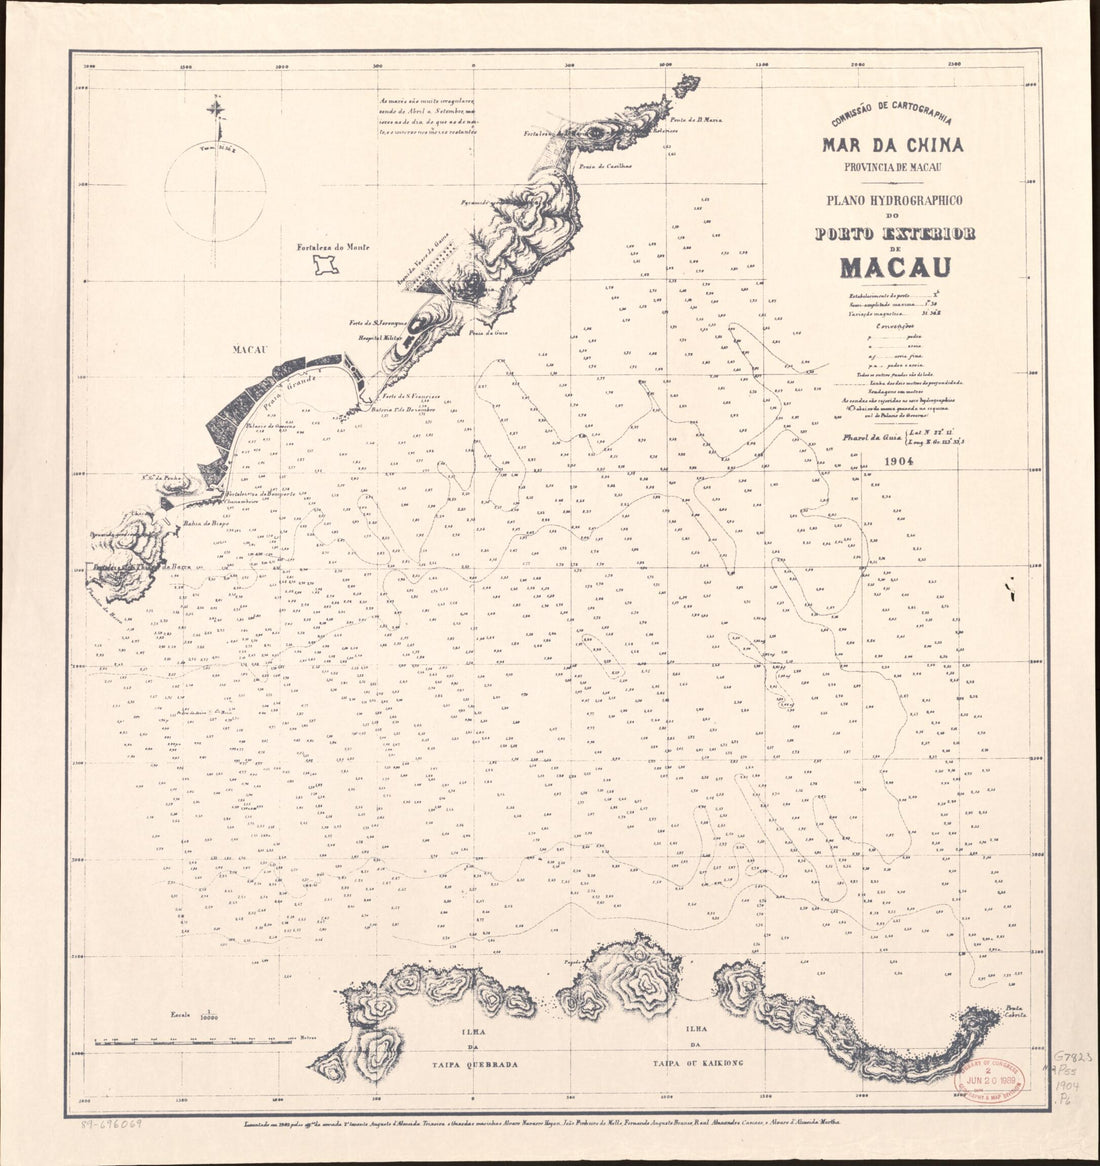 This old map of Mar Da China, Provincia De Macau : Plano Hydrográphico sic Do Pôrto Exterior De Macau from 1904 was created by  Portugal. Comissão De Cartografia Das Colónias in 1904